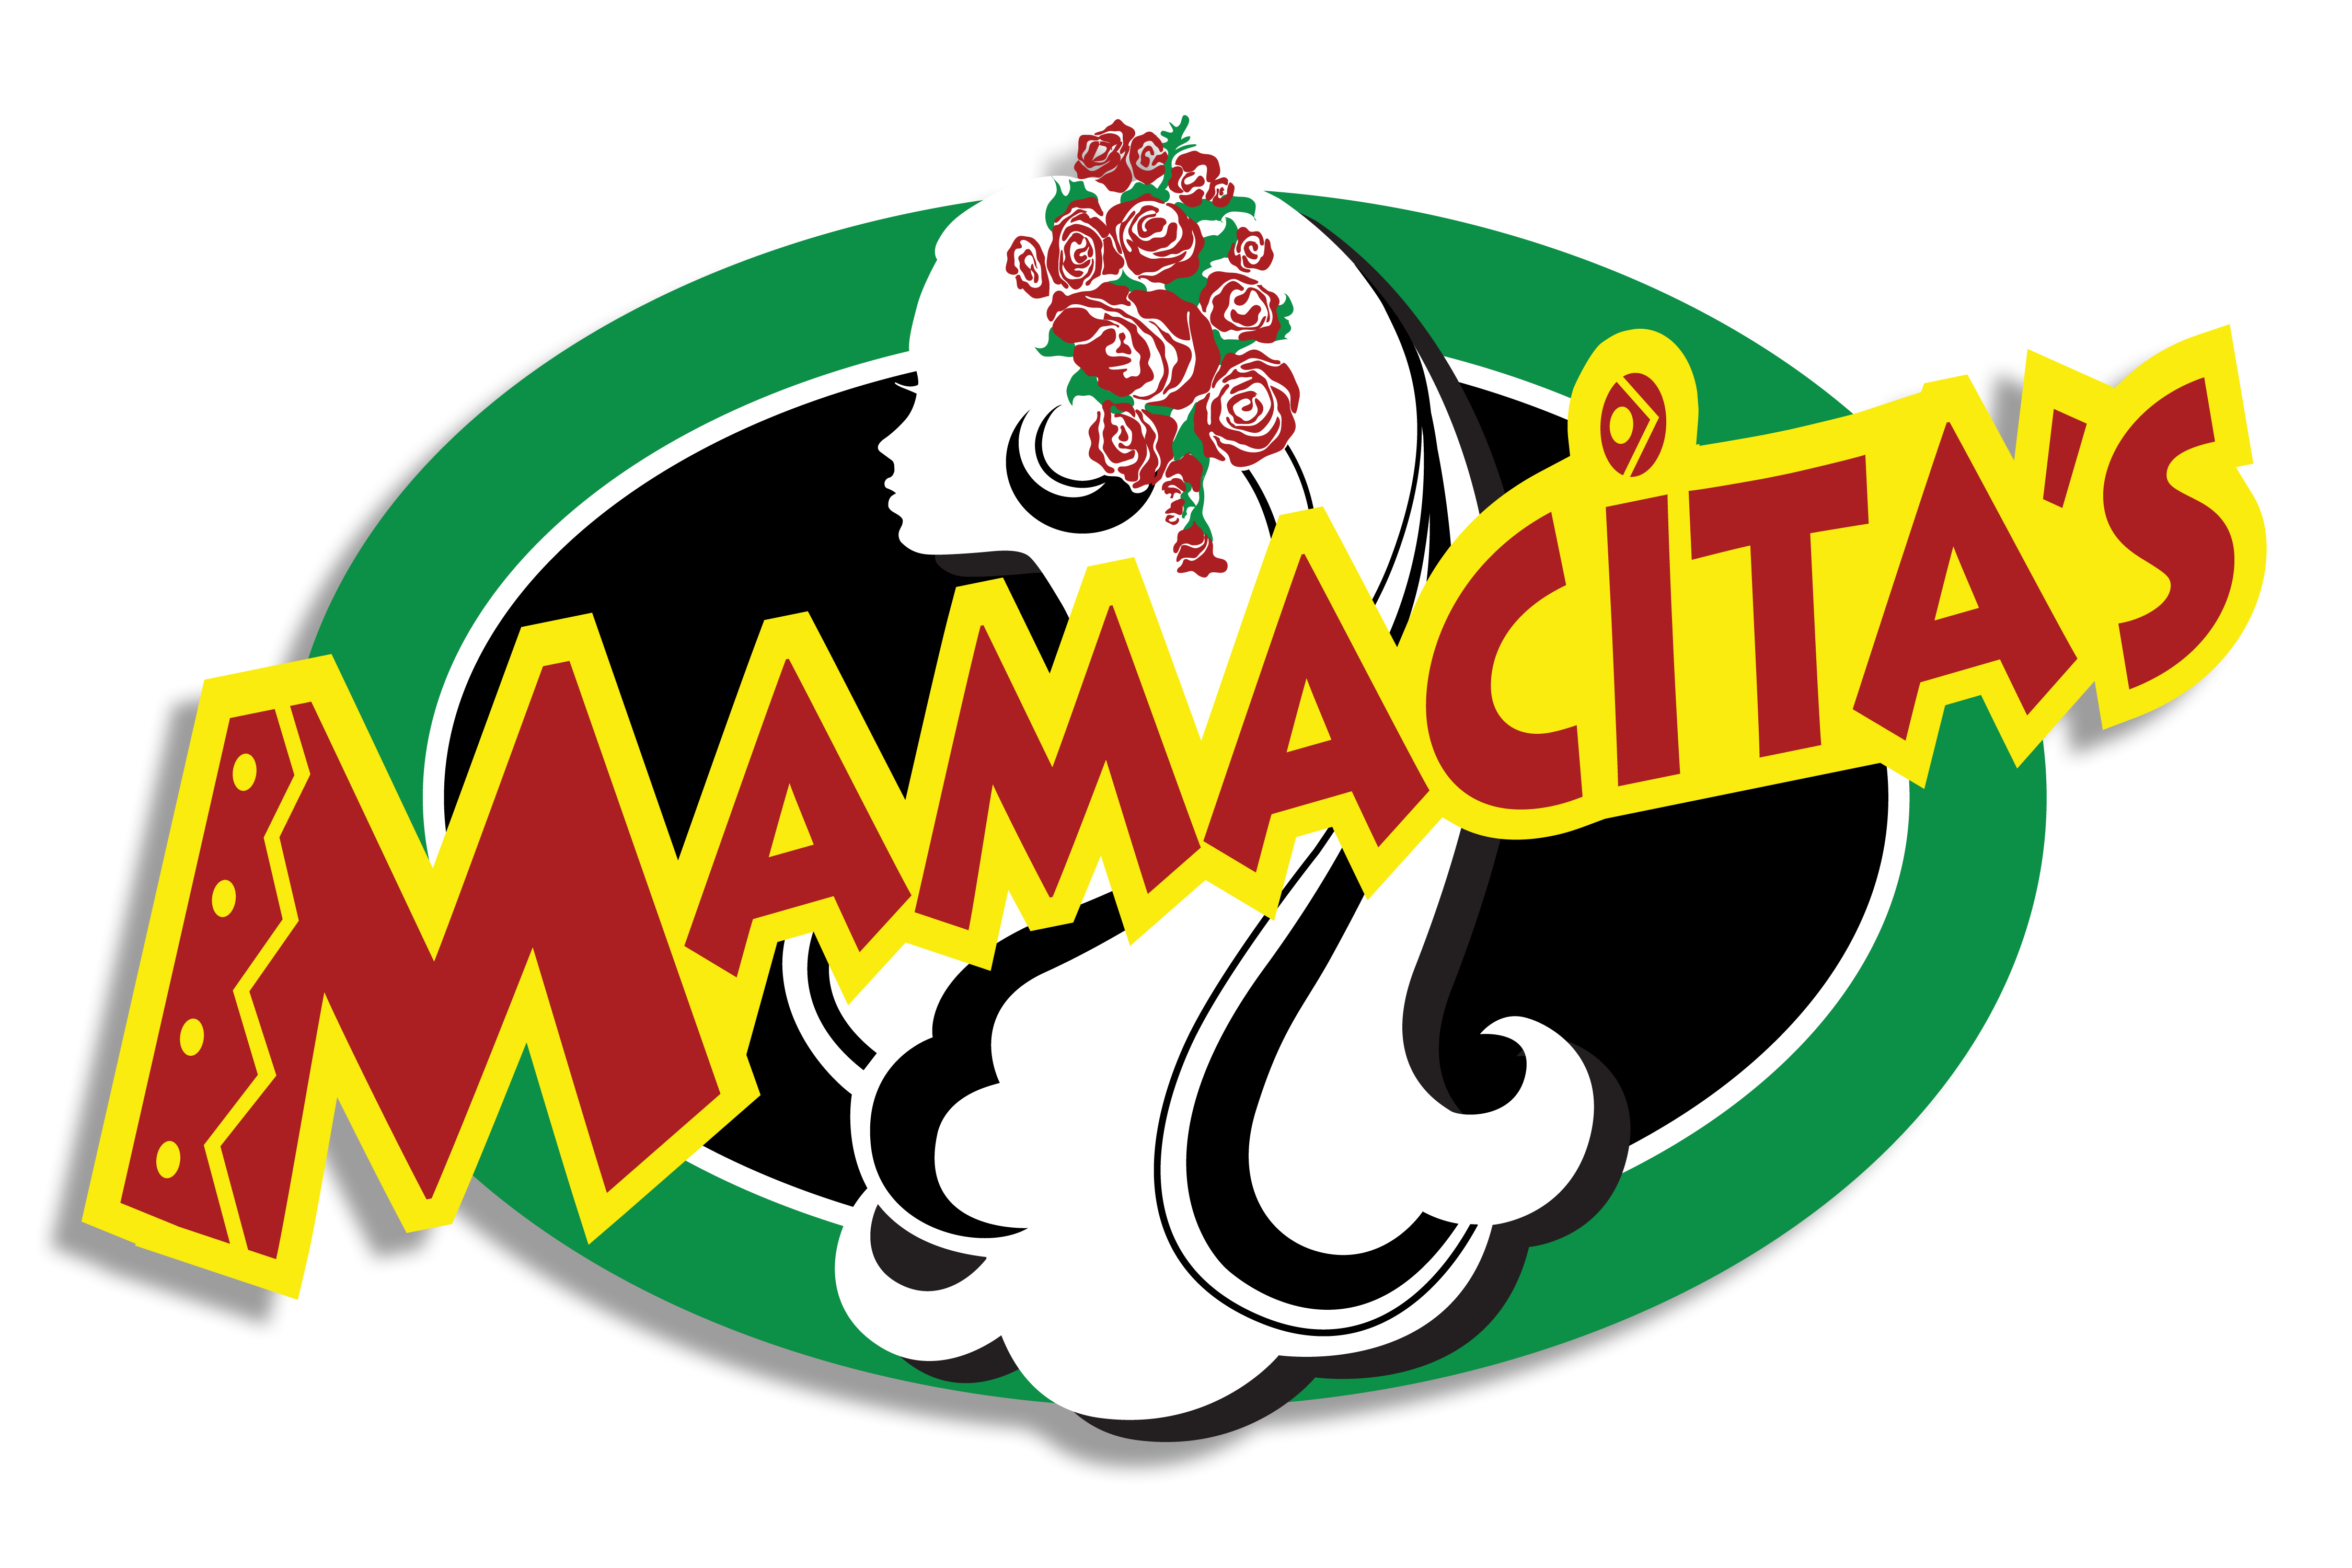 Mamacitas